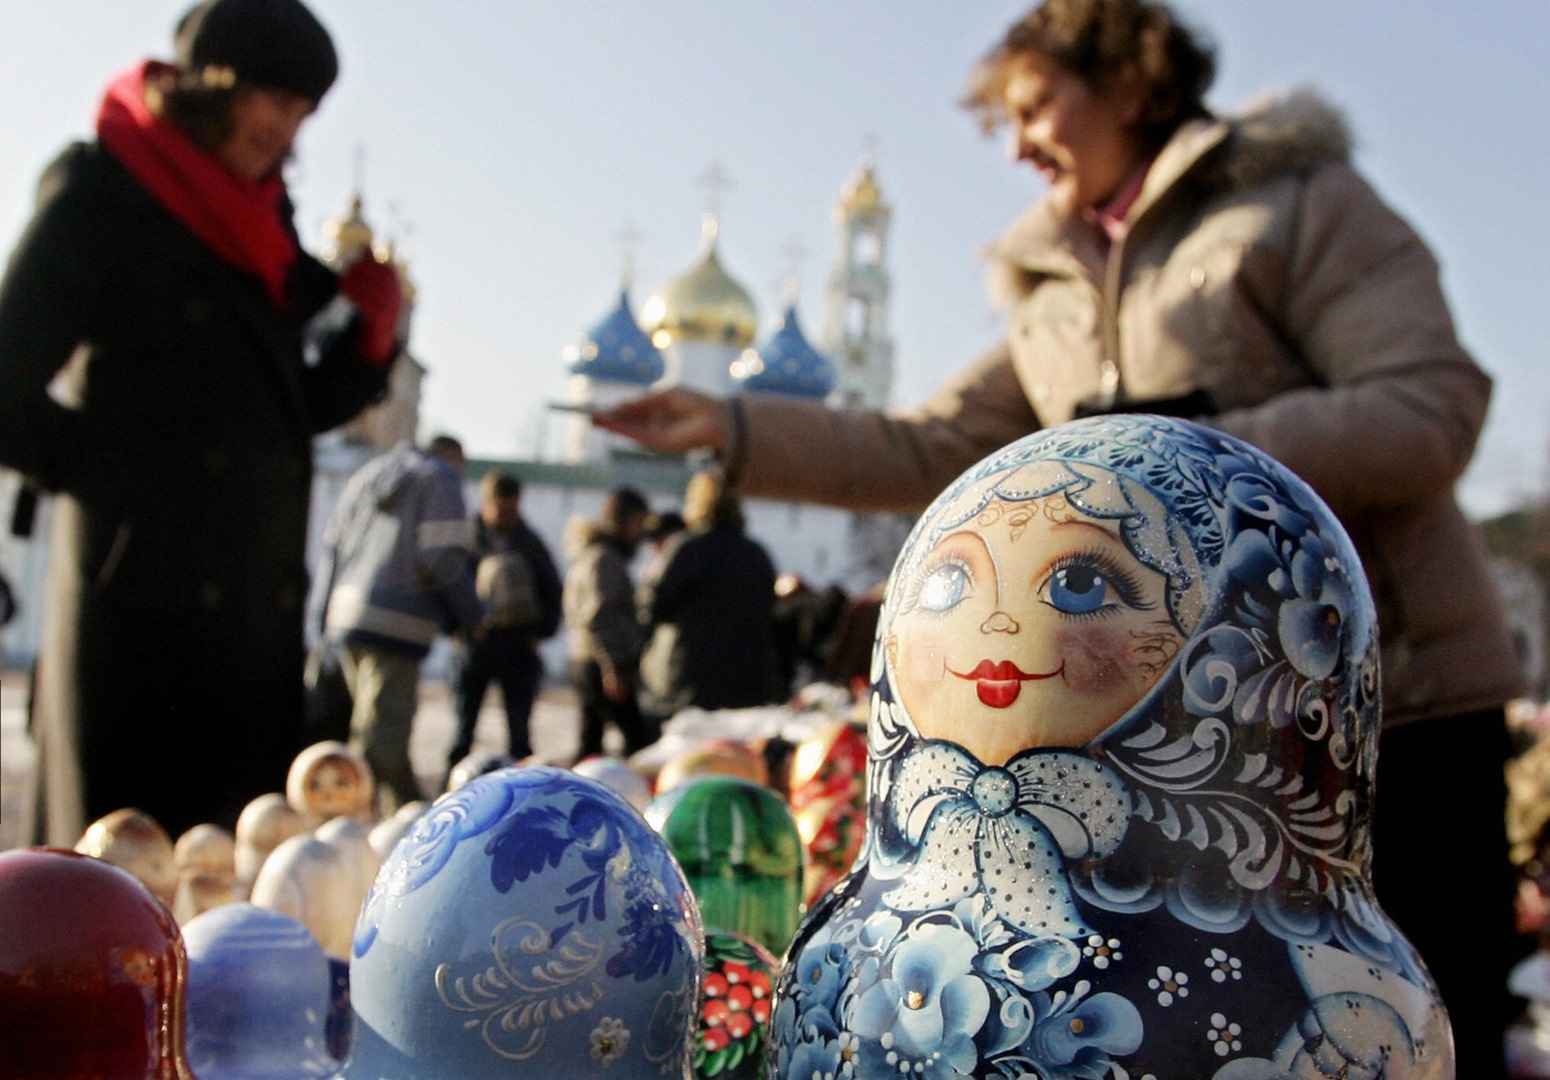 Юрмалу уже не спасти: российские санкции «похоронили» туризм Прибалтики